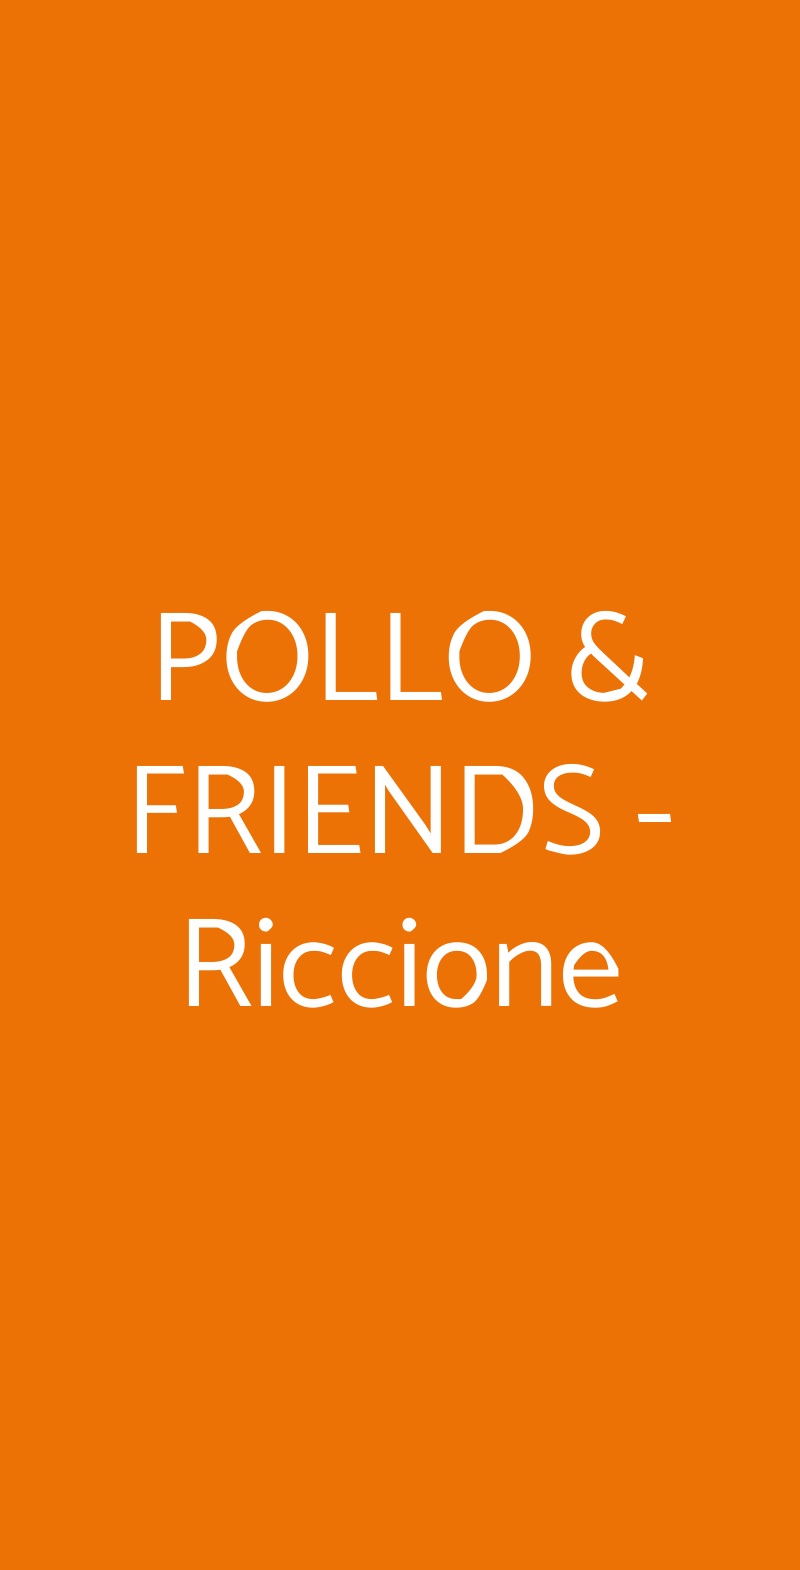 POLLO & FRIENDS -Riccione Riccione menù 1 pagina